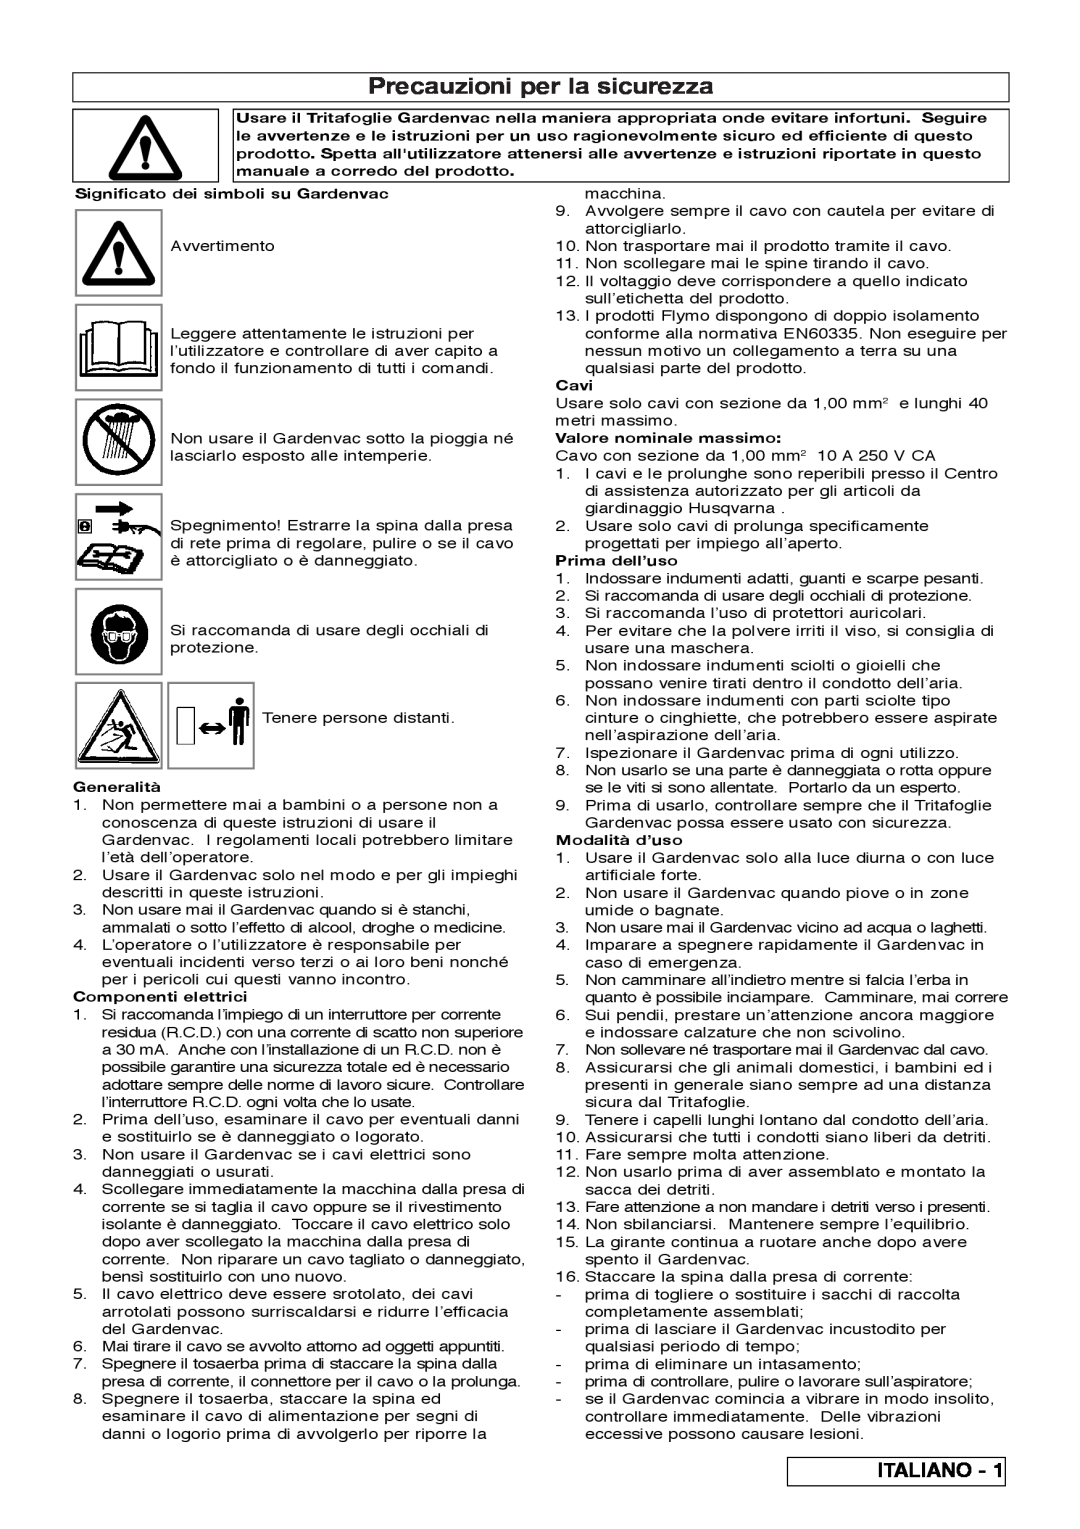 Flymo 2200 Precauzioni per la sicurezza, Italiano, Significato dei simboli su Gardenvac, Generalità, Componenti elettrici 